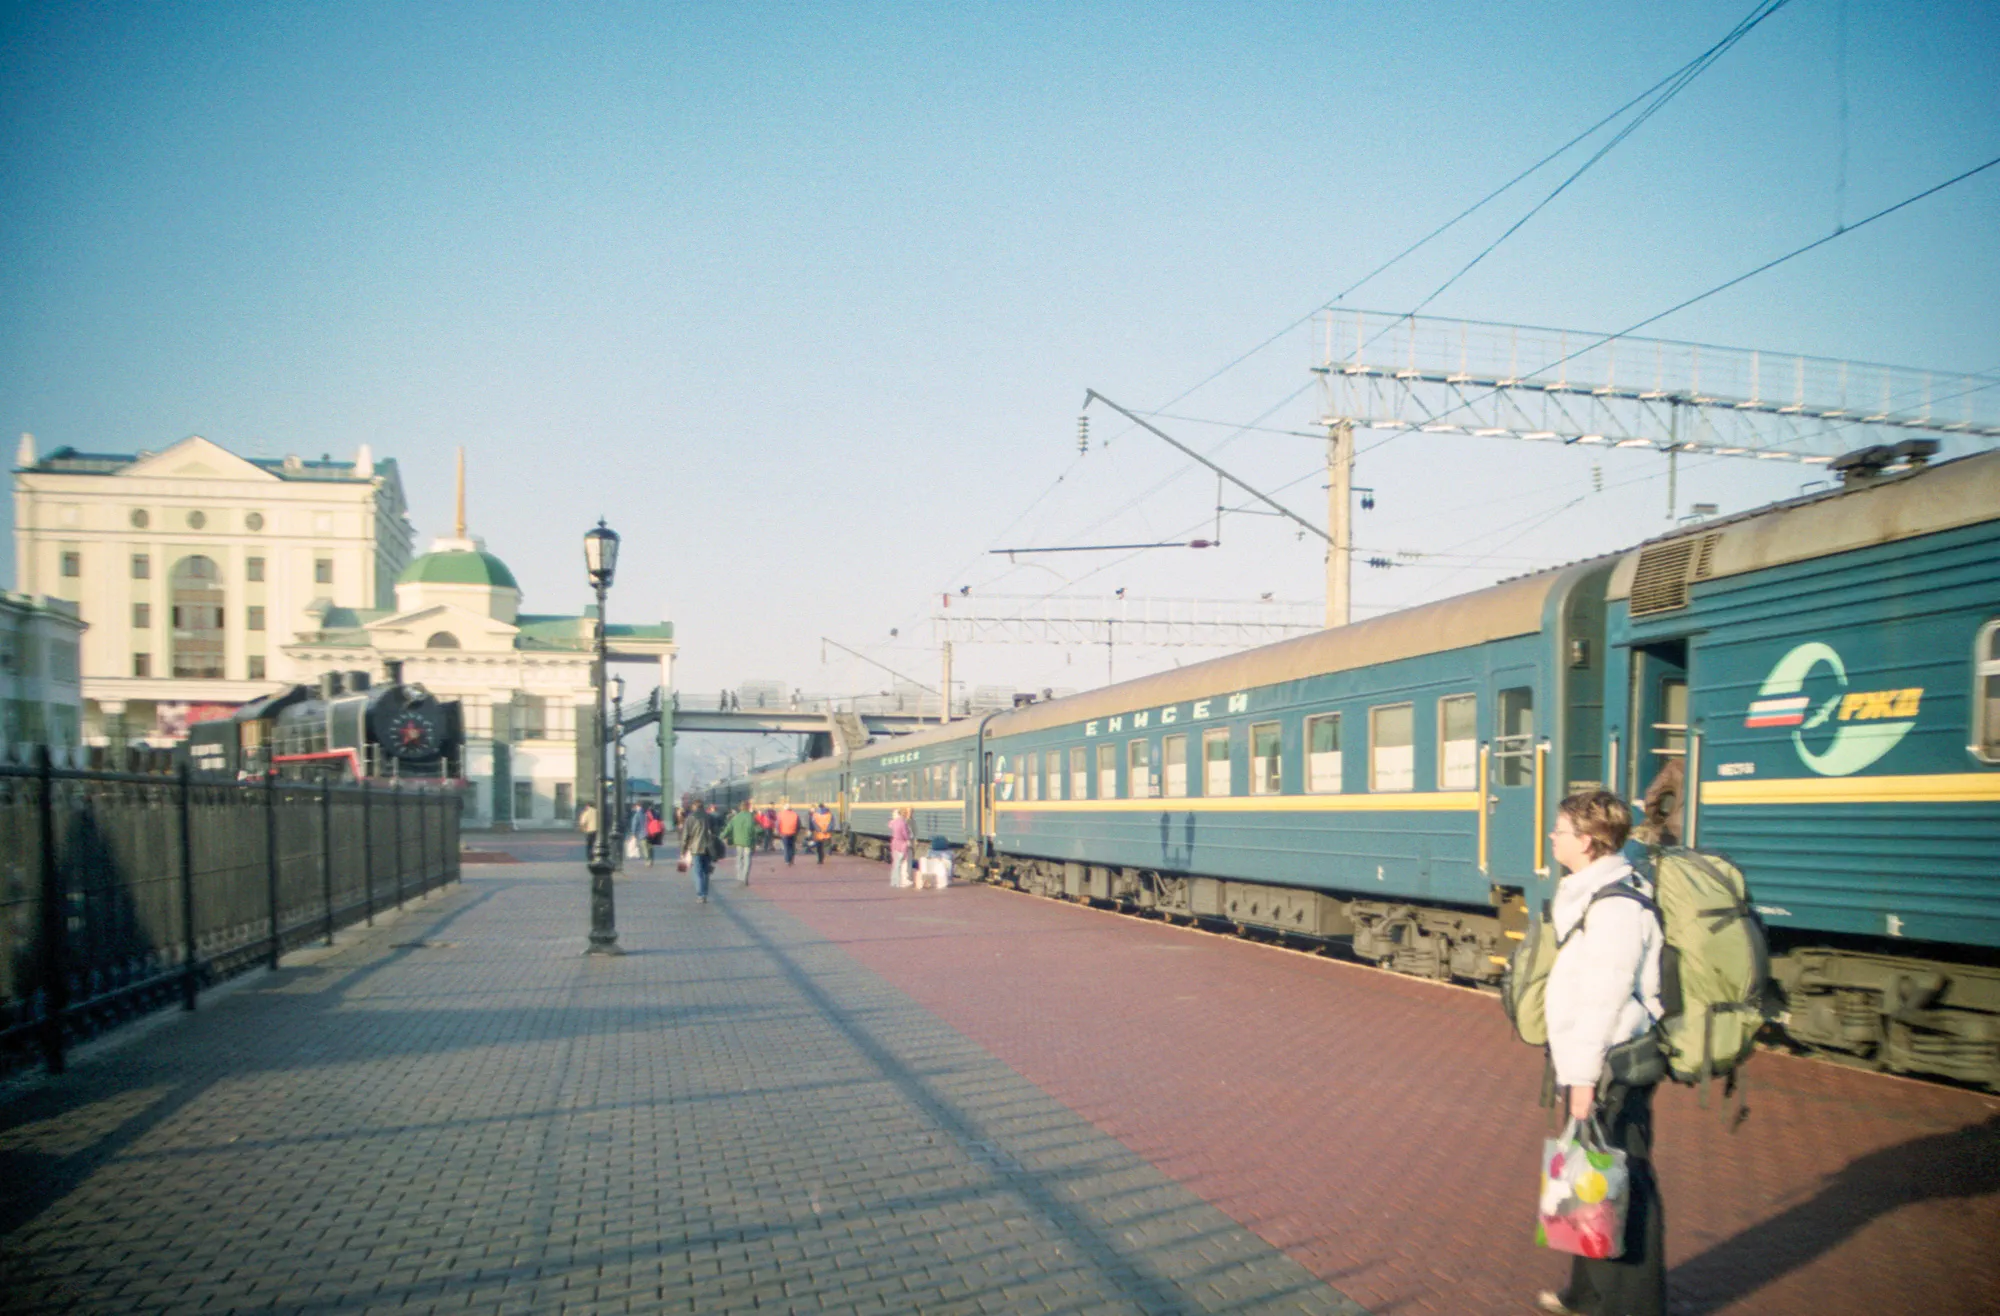 Arriving in Krasnoyarsk